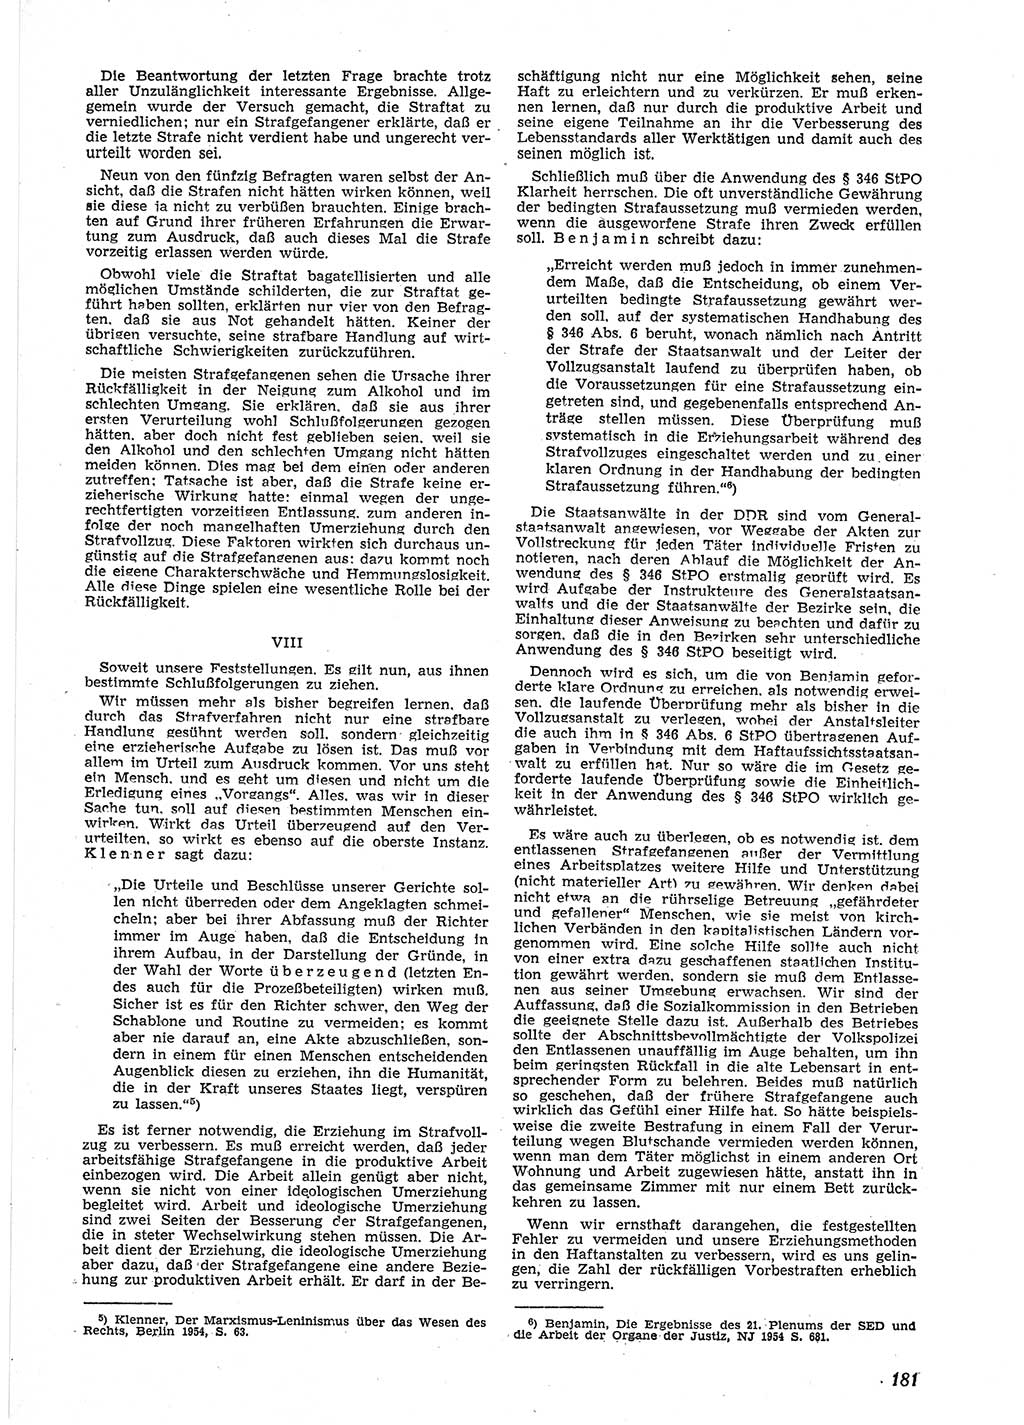 Neue Justiz (NJ), Zeitschrift für Recht und Rechtswissenschaft [Deutsche Demokratische Republik (DDR)], 9. Jahrgang 1955, Seite 181 (NJ DDR 1955, S. 181)